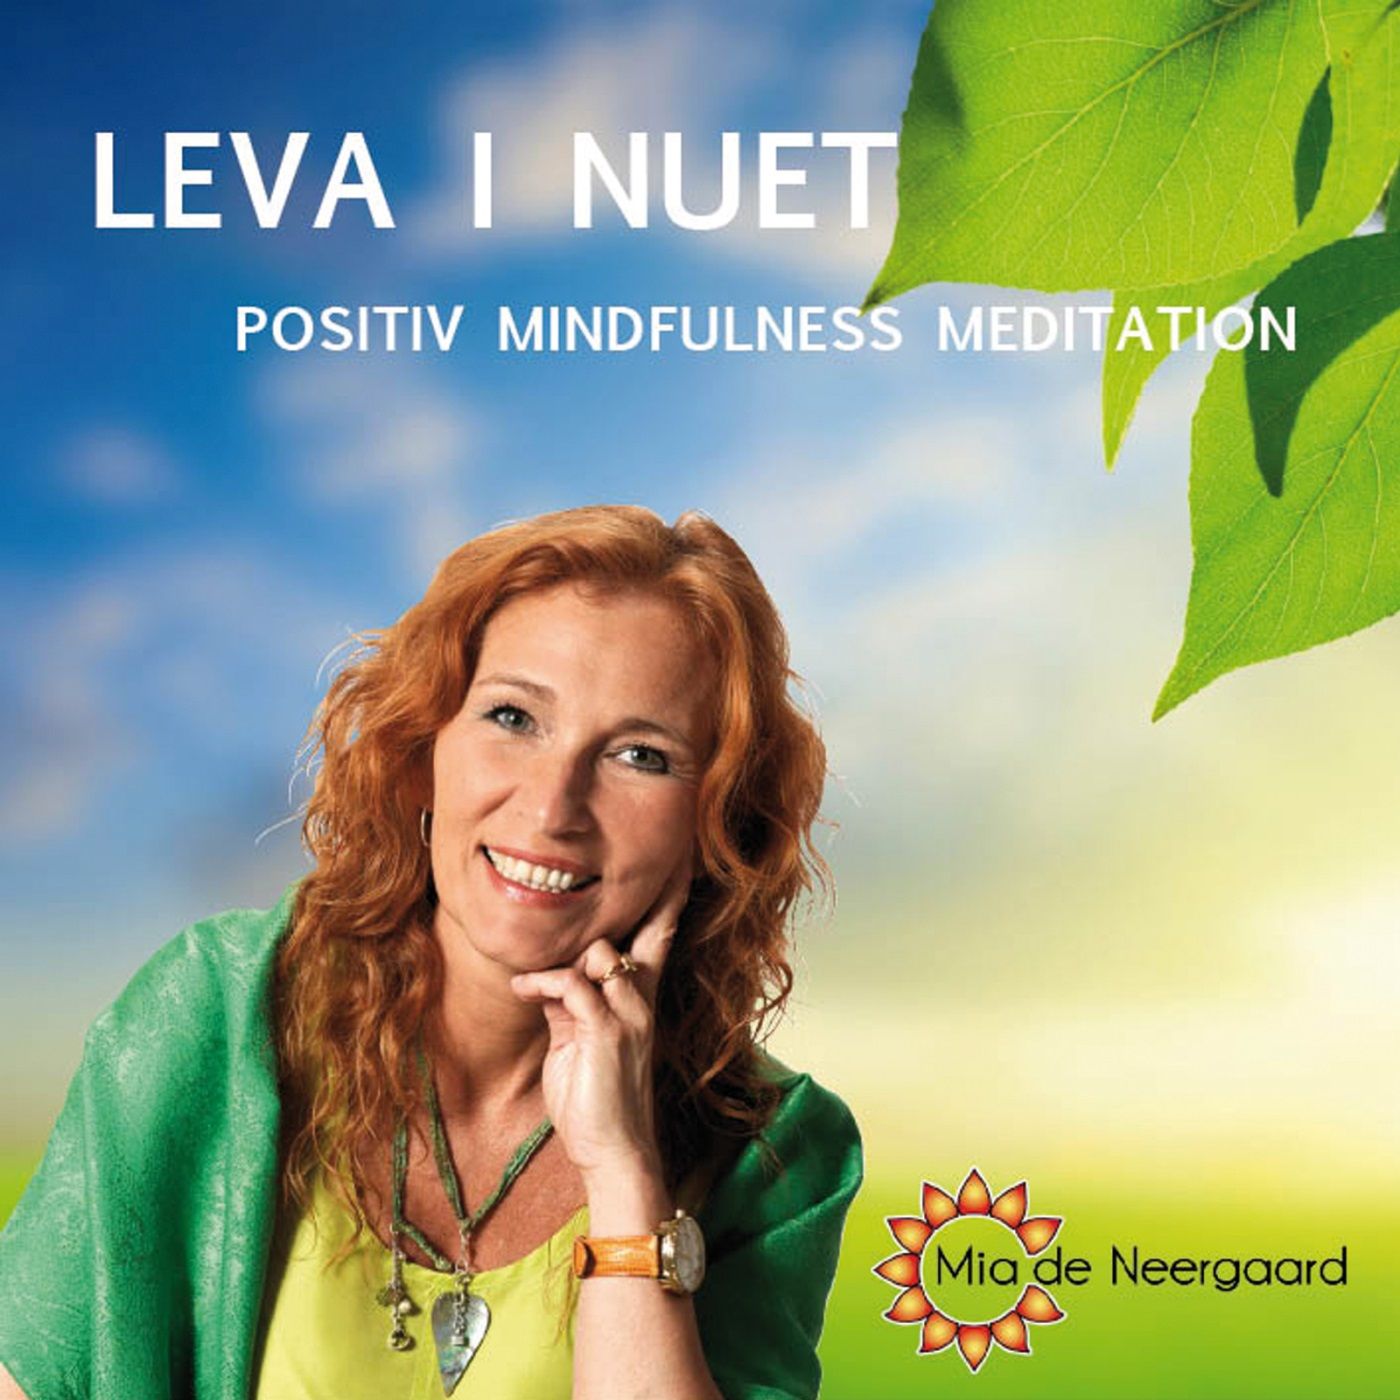 Leva i nuet : positiv mindfullness meditation, ljudbok av Mia de Neergaard